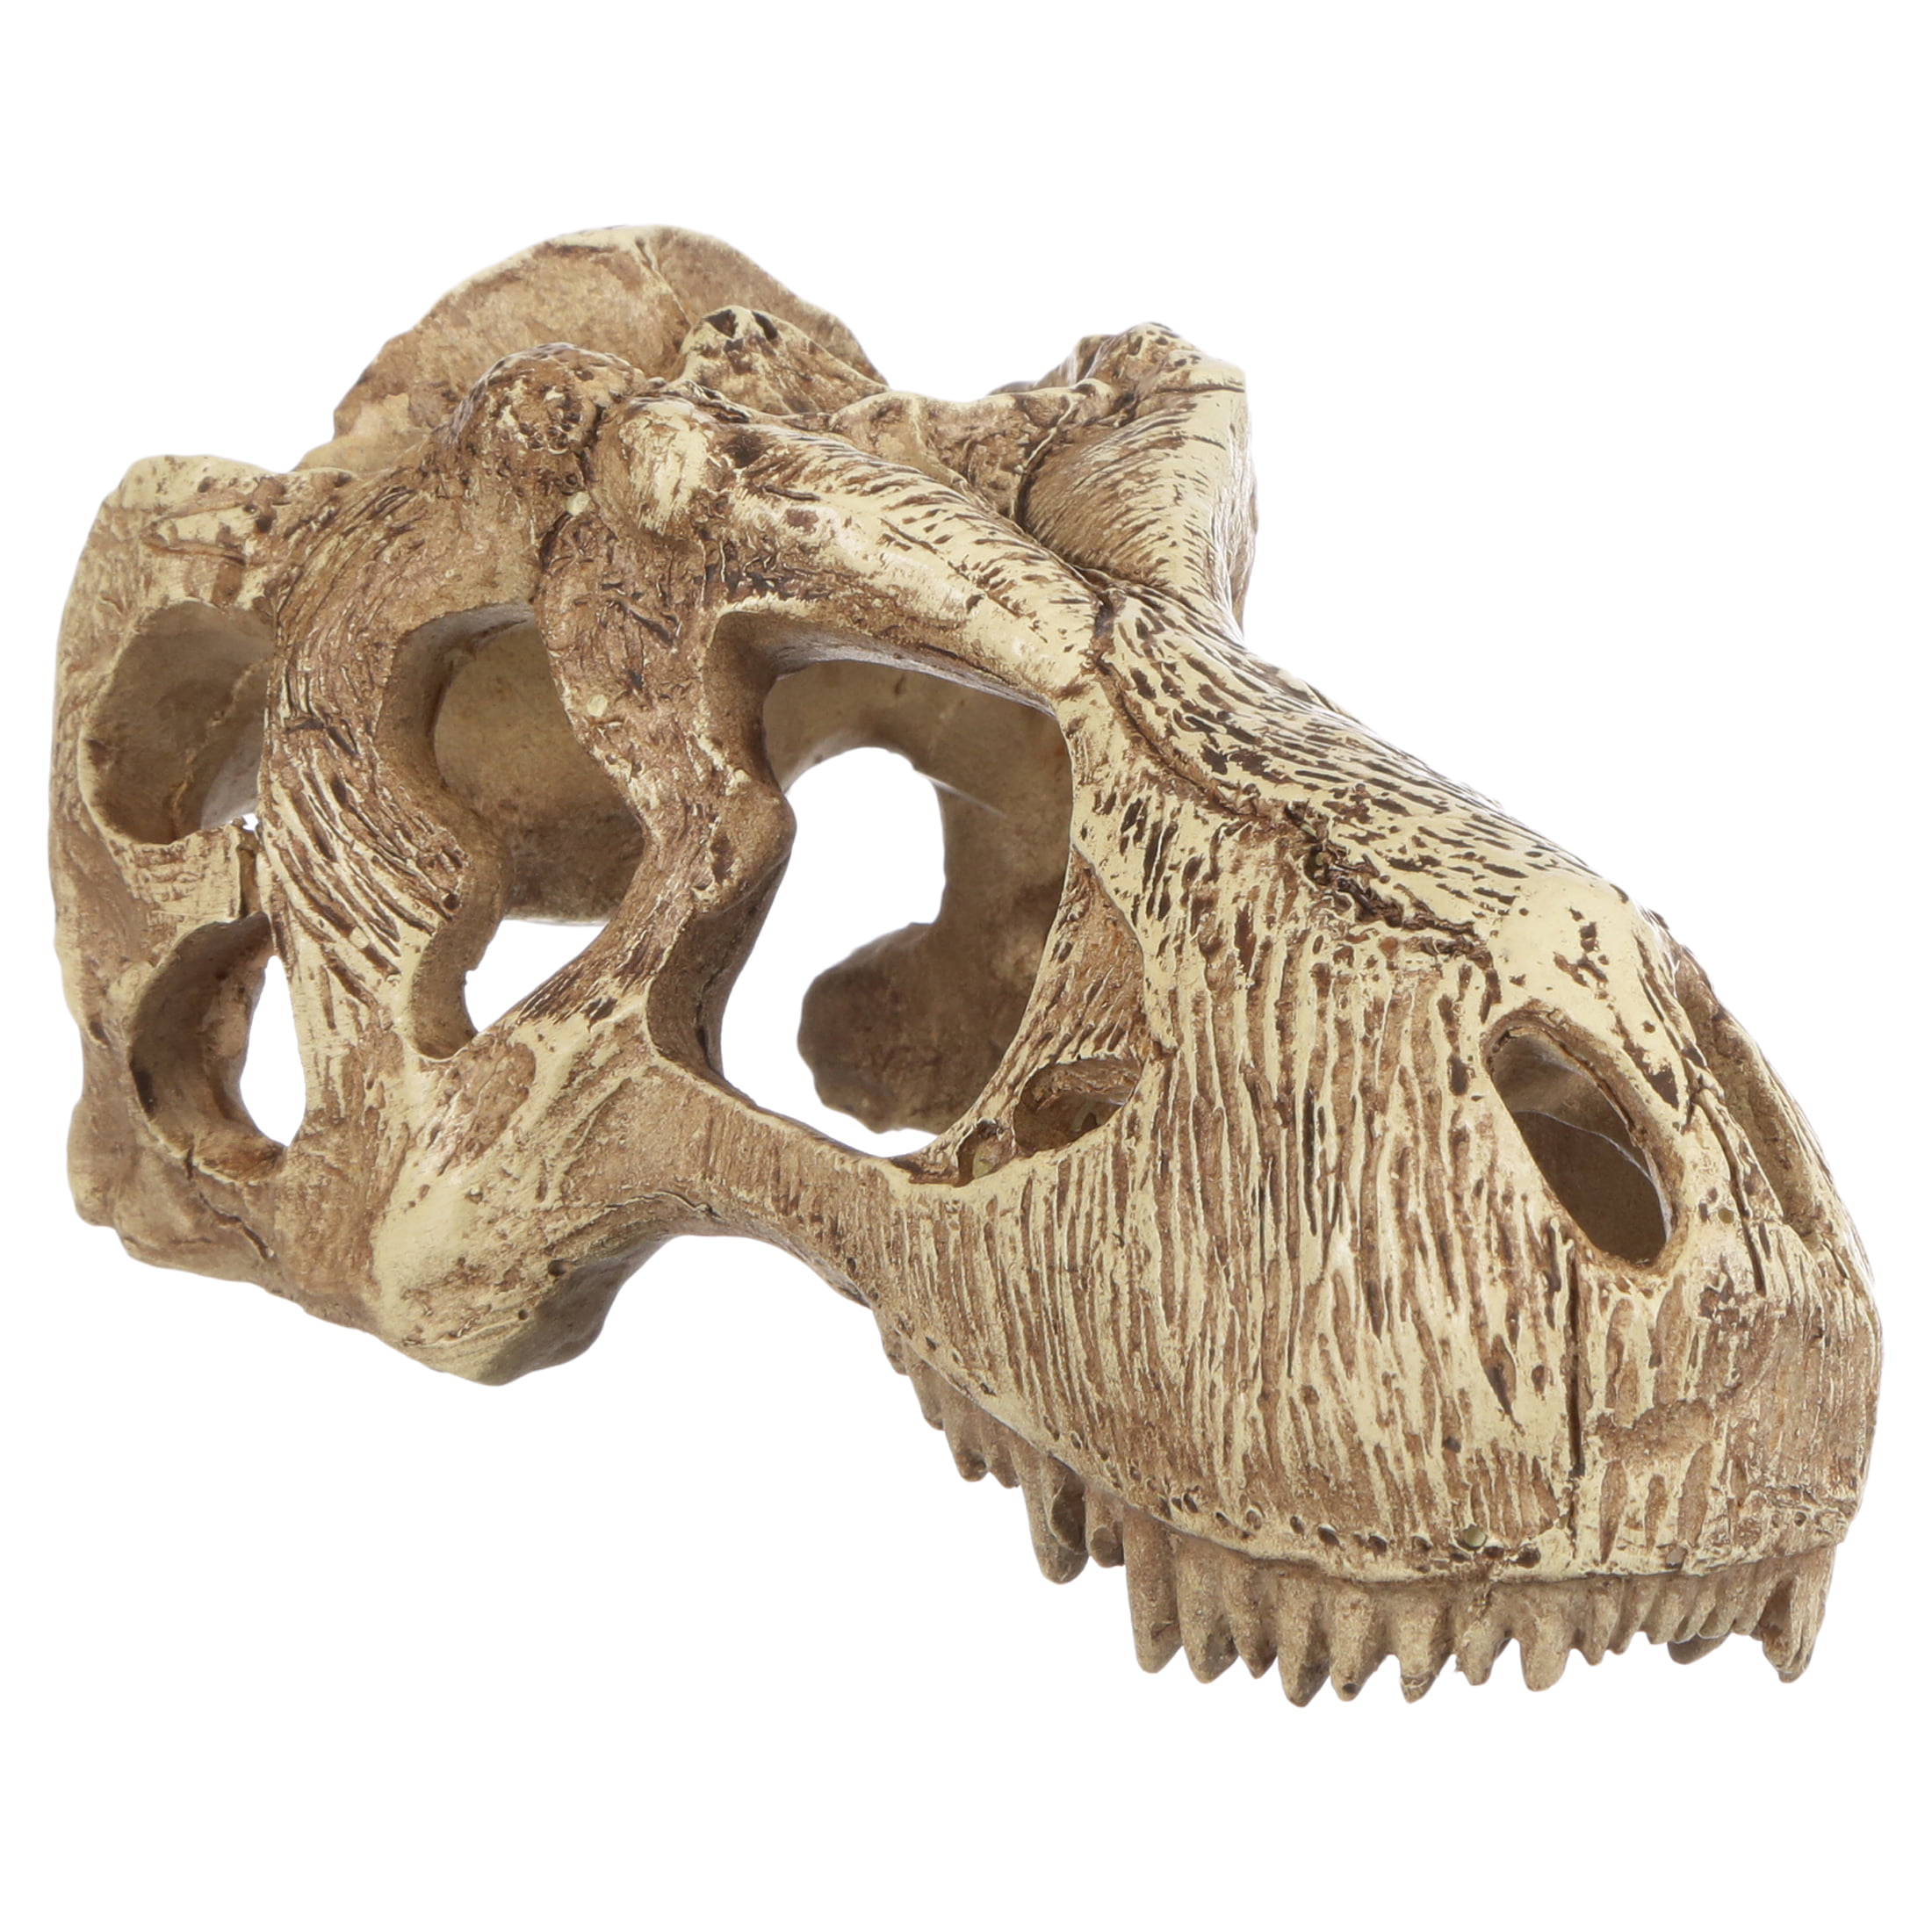 Exo Terra Reptilien Deko-Versteck T-Rex Skull, 15x7x7cm